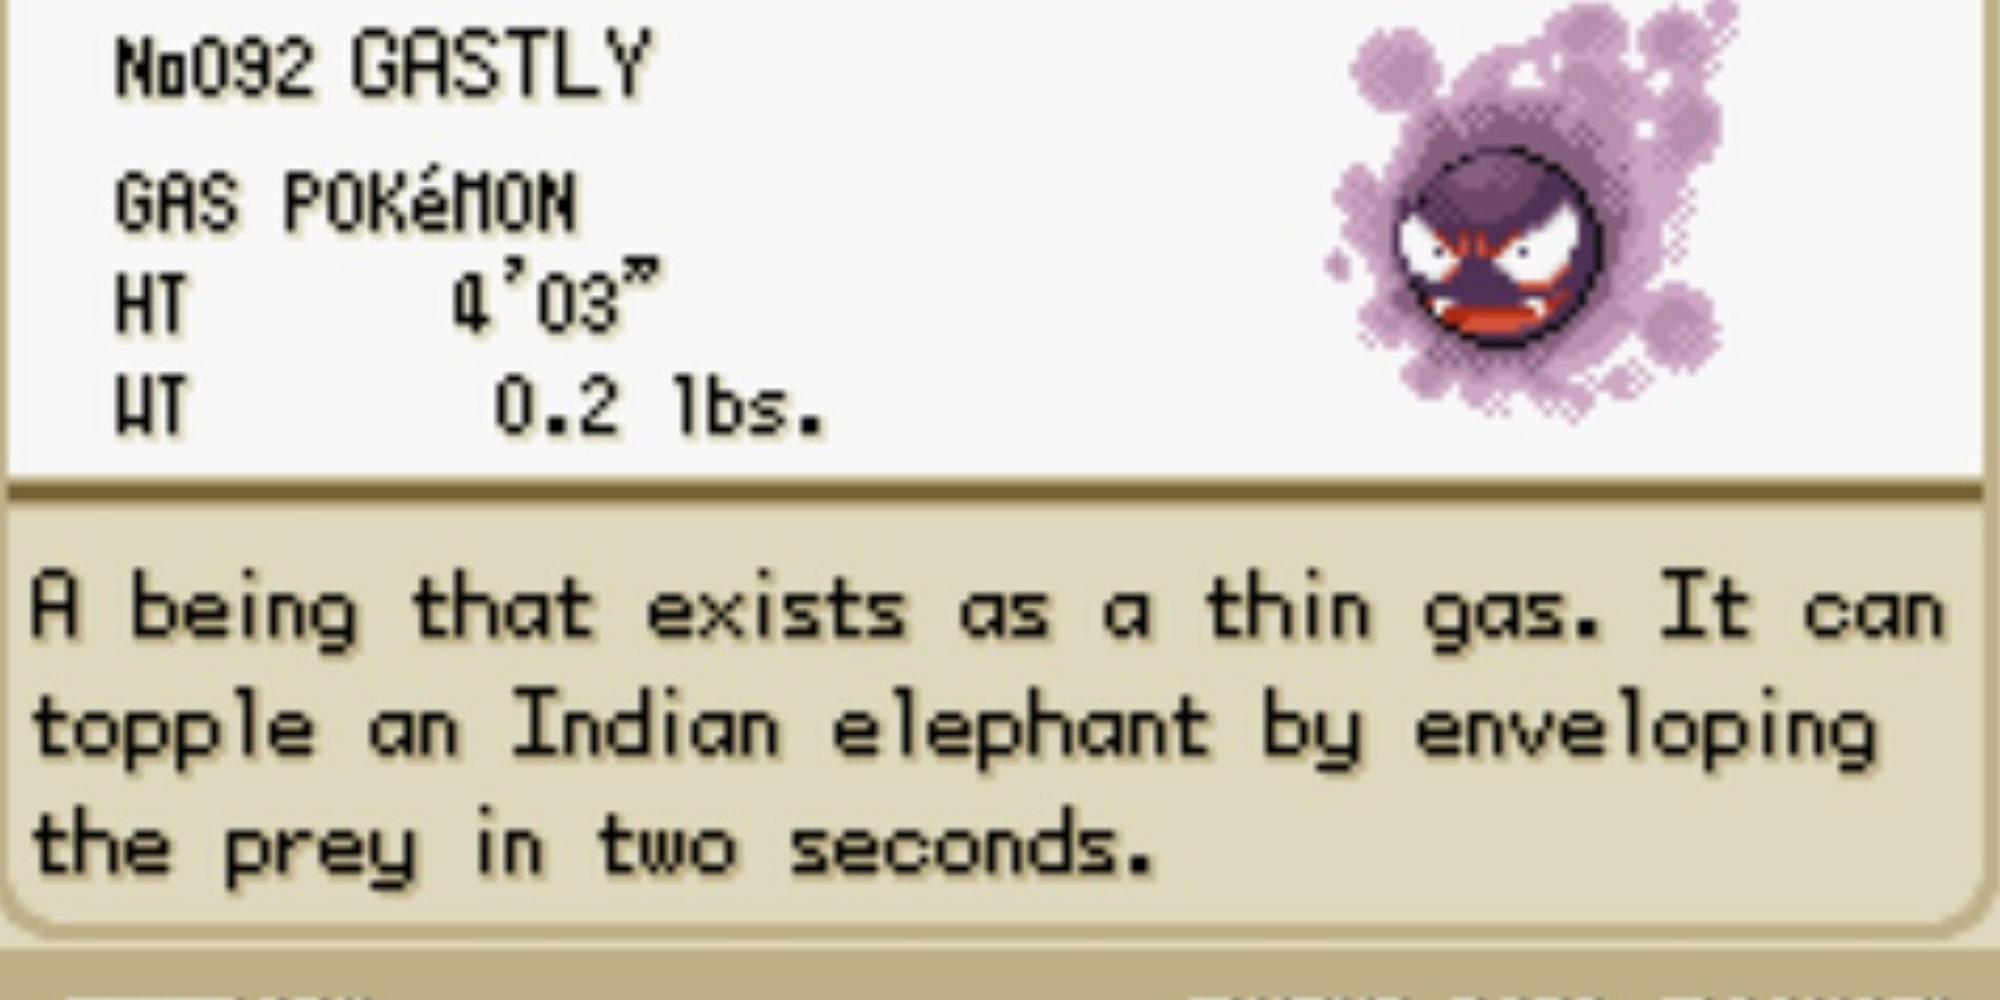 PokemonIndianElephant